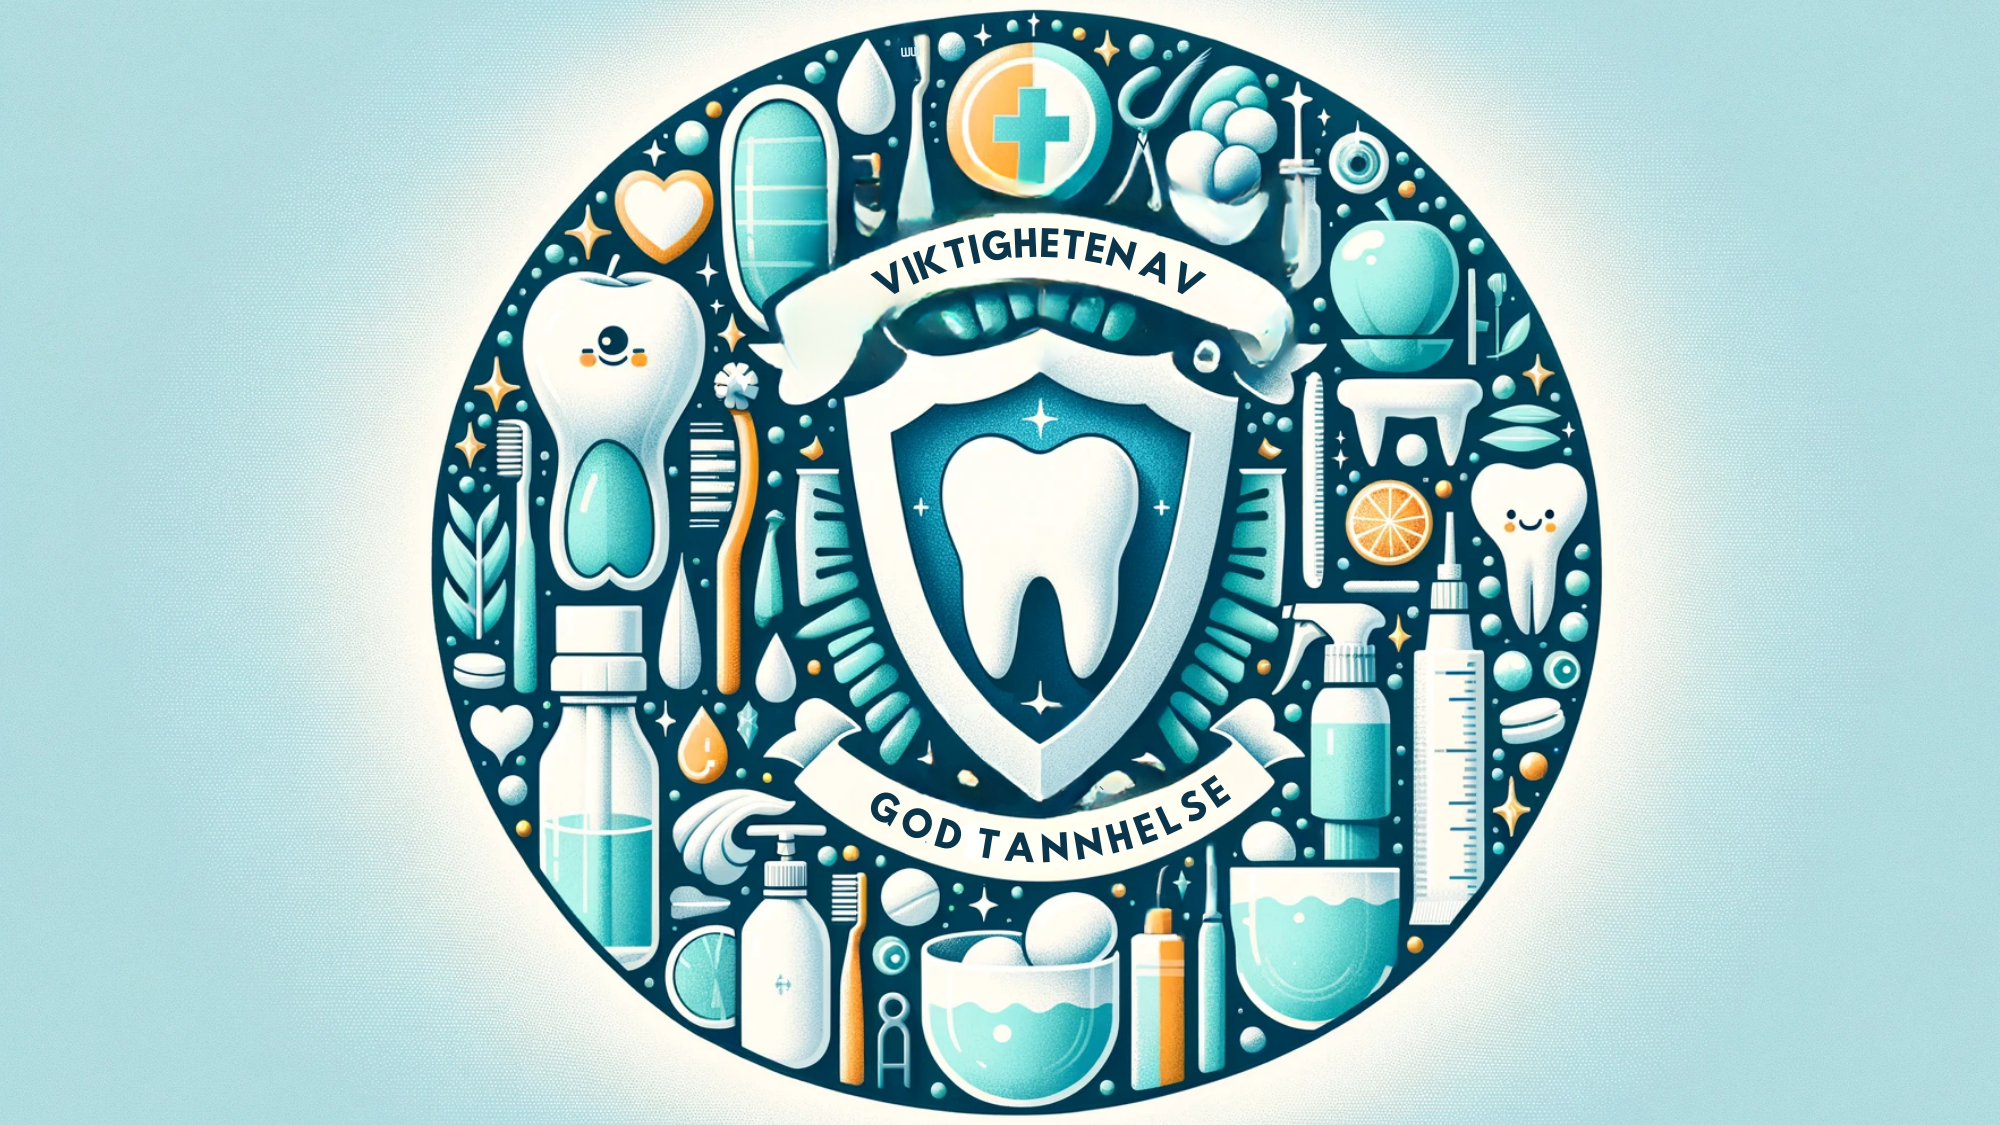 Illustrasjon som fremhever tannhelse med verktøy og friskhetssymboler i blått og grønt.